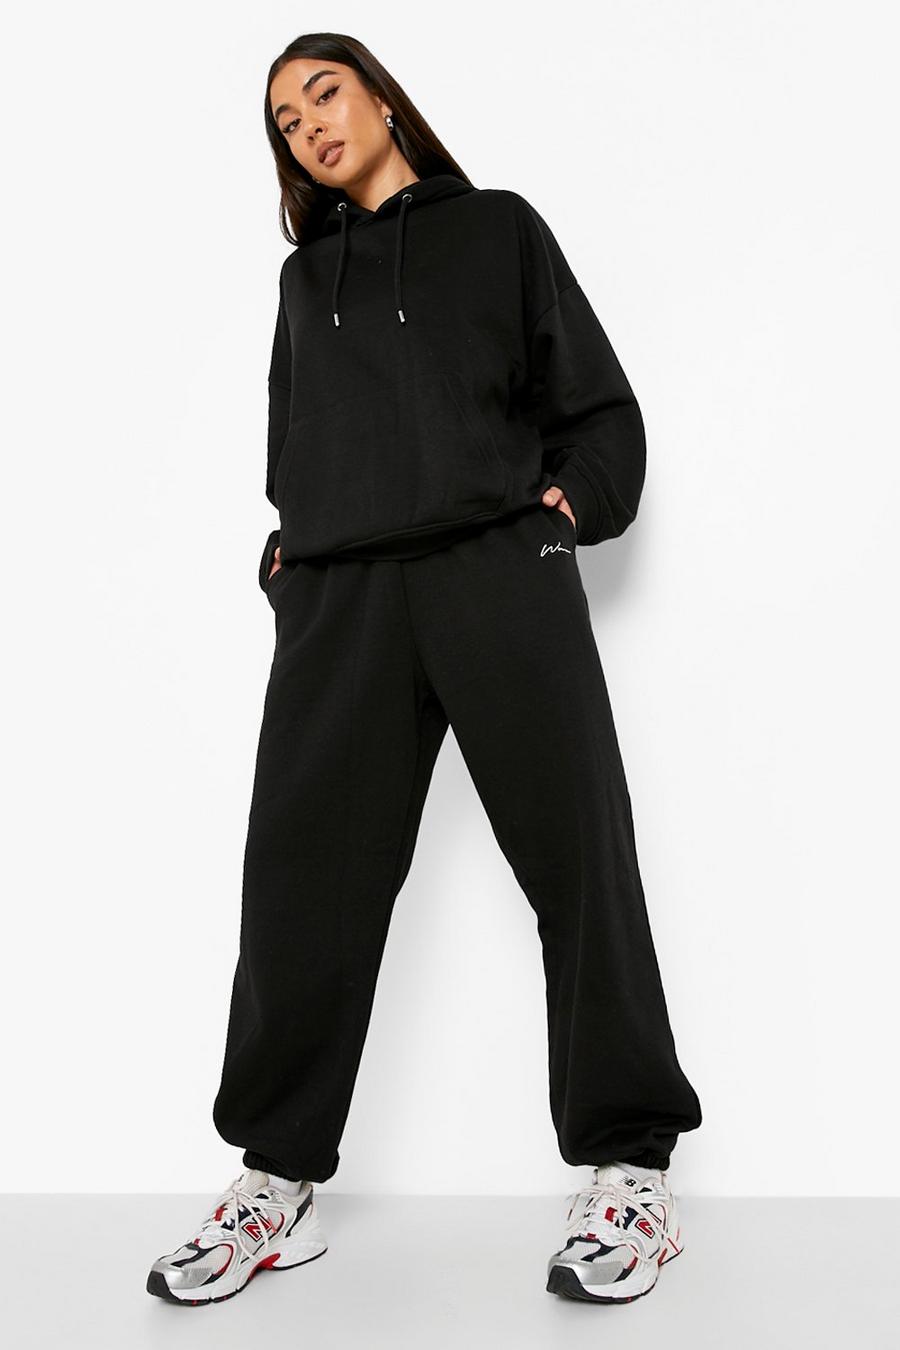 שחור nero מכנסי ריצה אוברסייז מבד ממוחזר עם כיתוב Woman